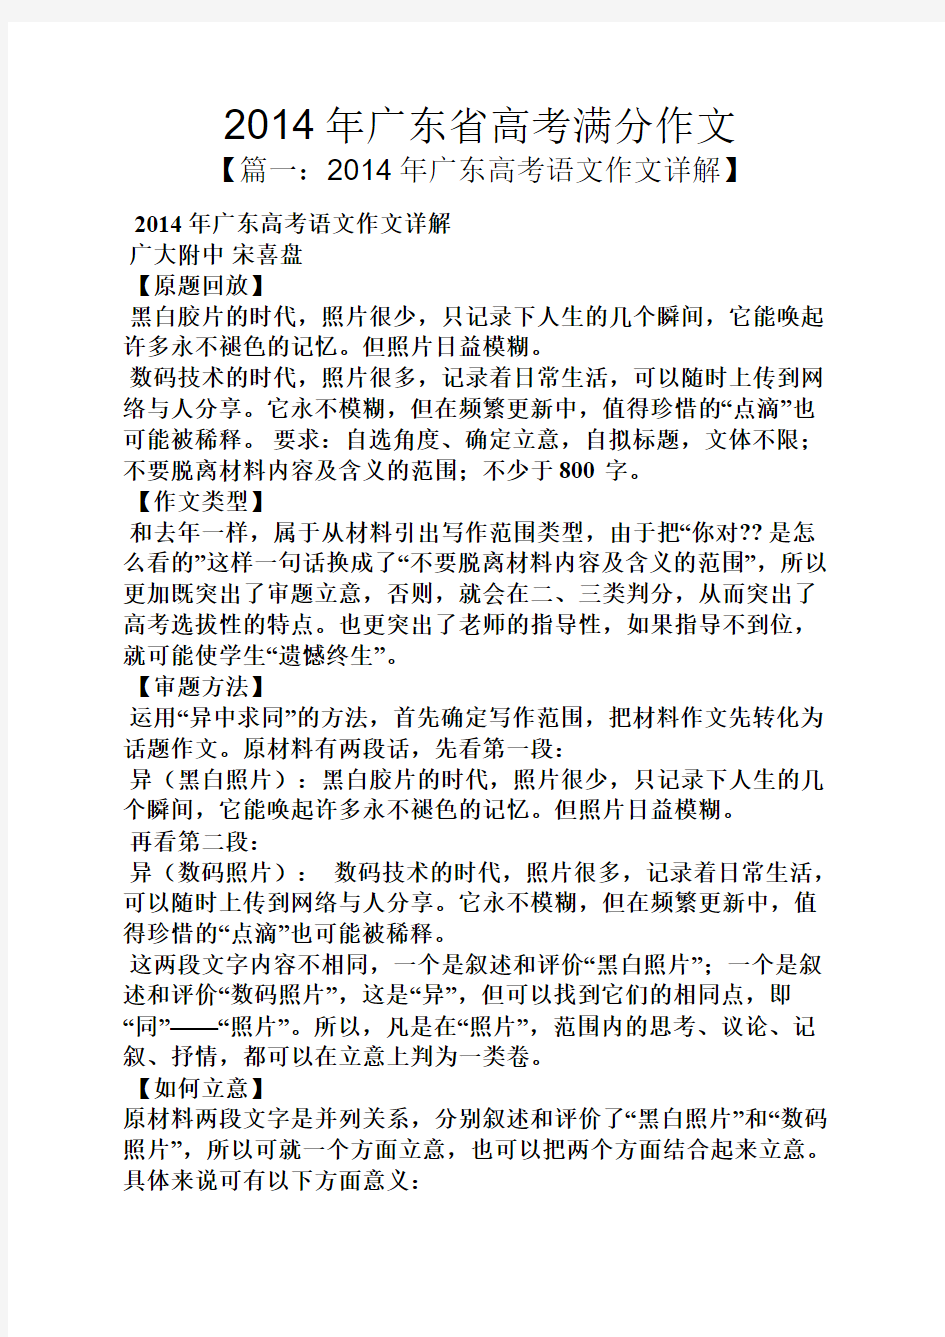 高考作文之2014年广东省高考满分作文